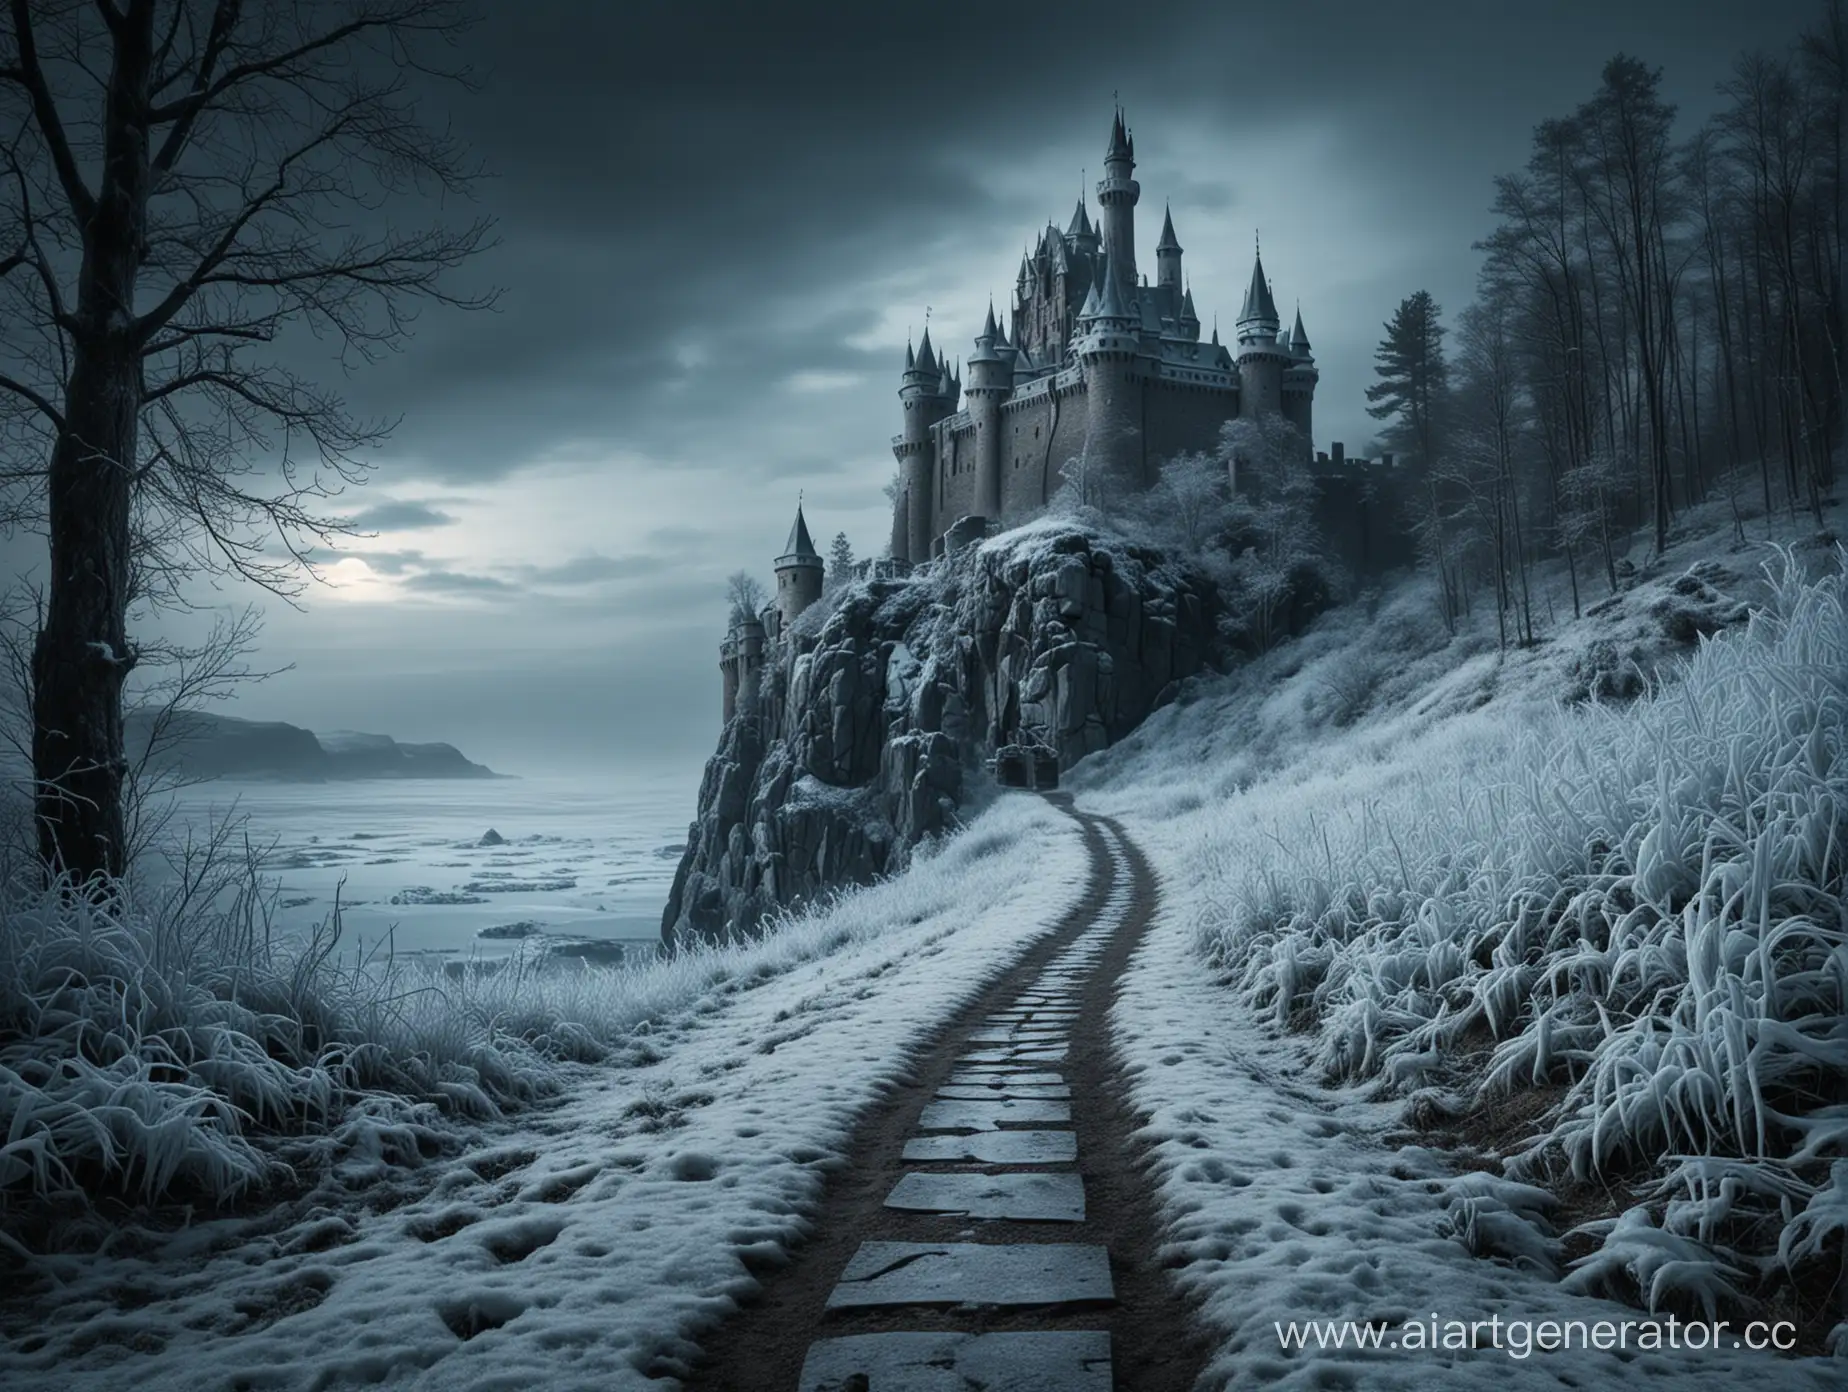 Путь в ледяной замок, где в далеке виден бос. морозная королева. Темный фон